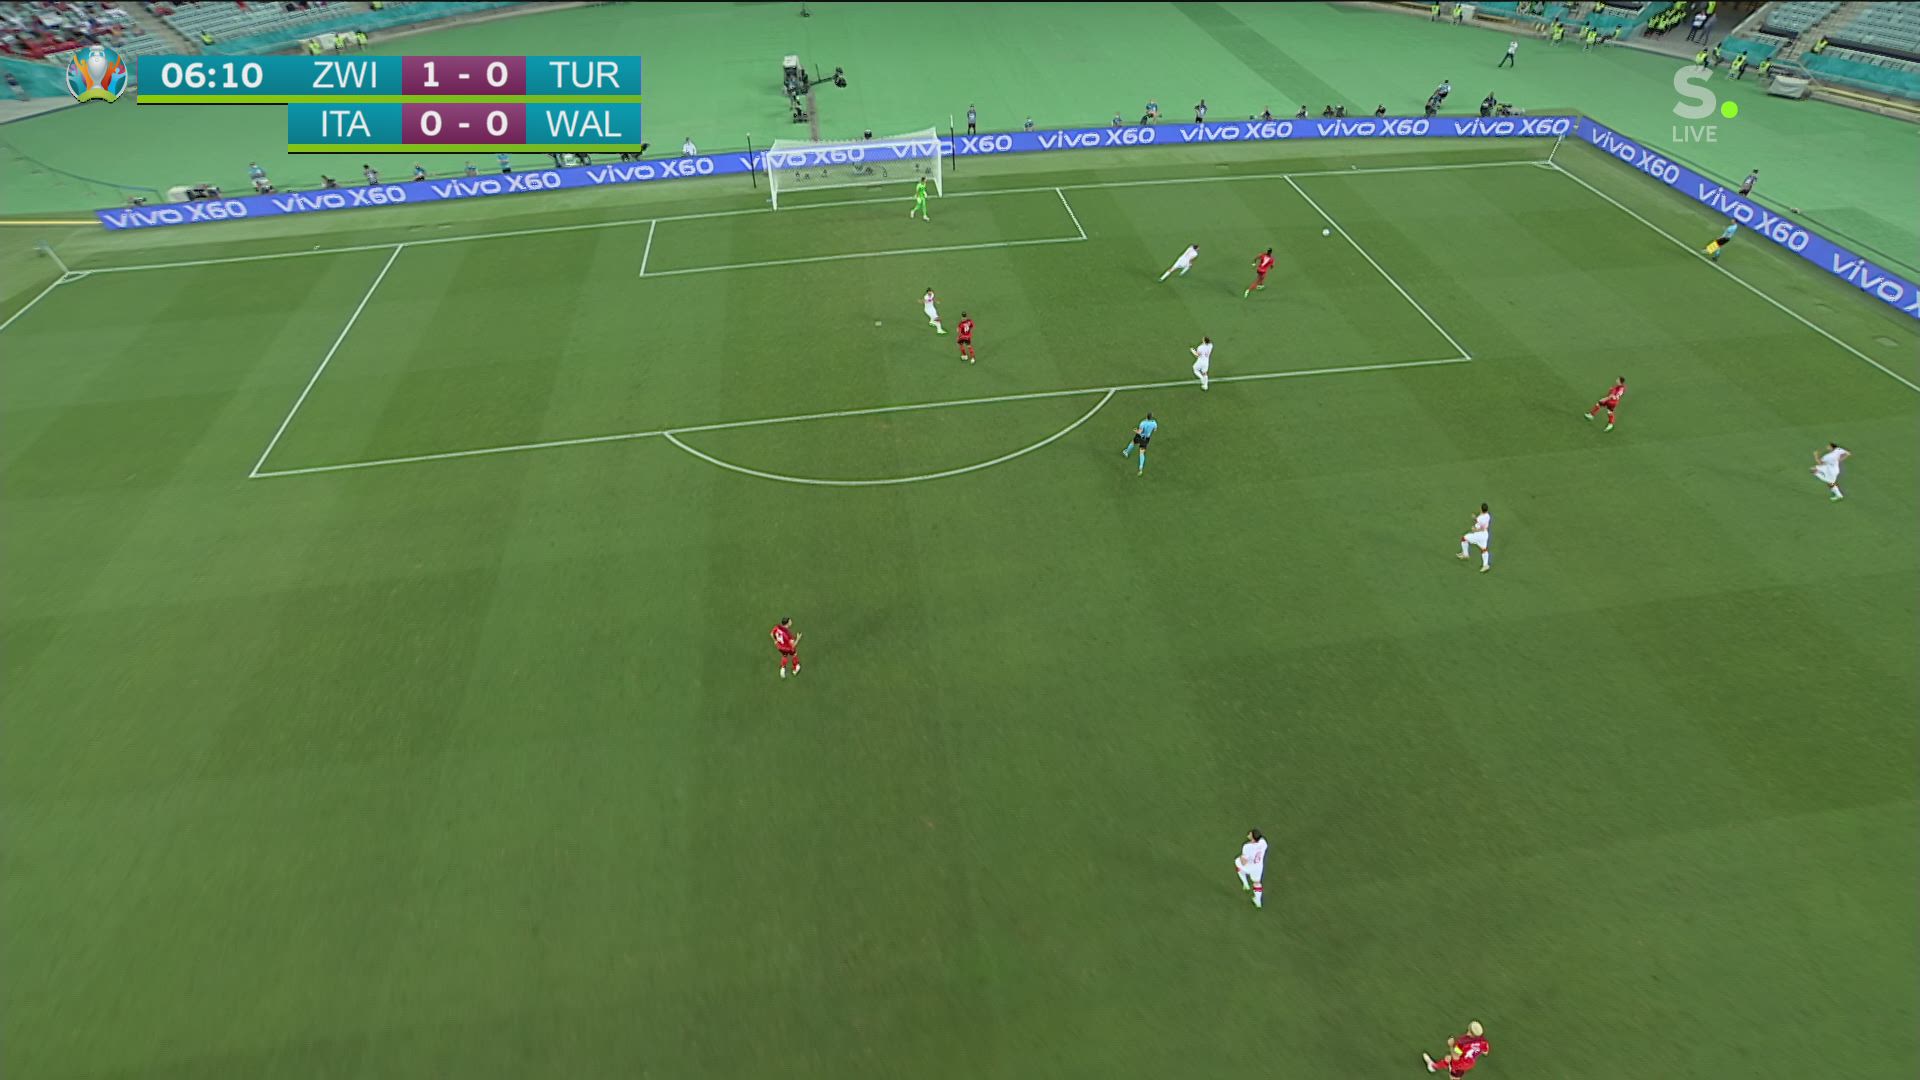 Seferovic knalt Zwitserland op 1-0 tegen Turkije | EK ...